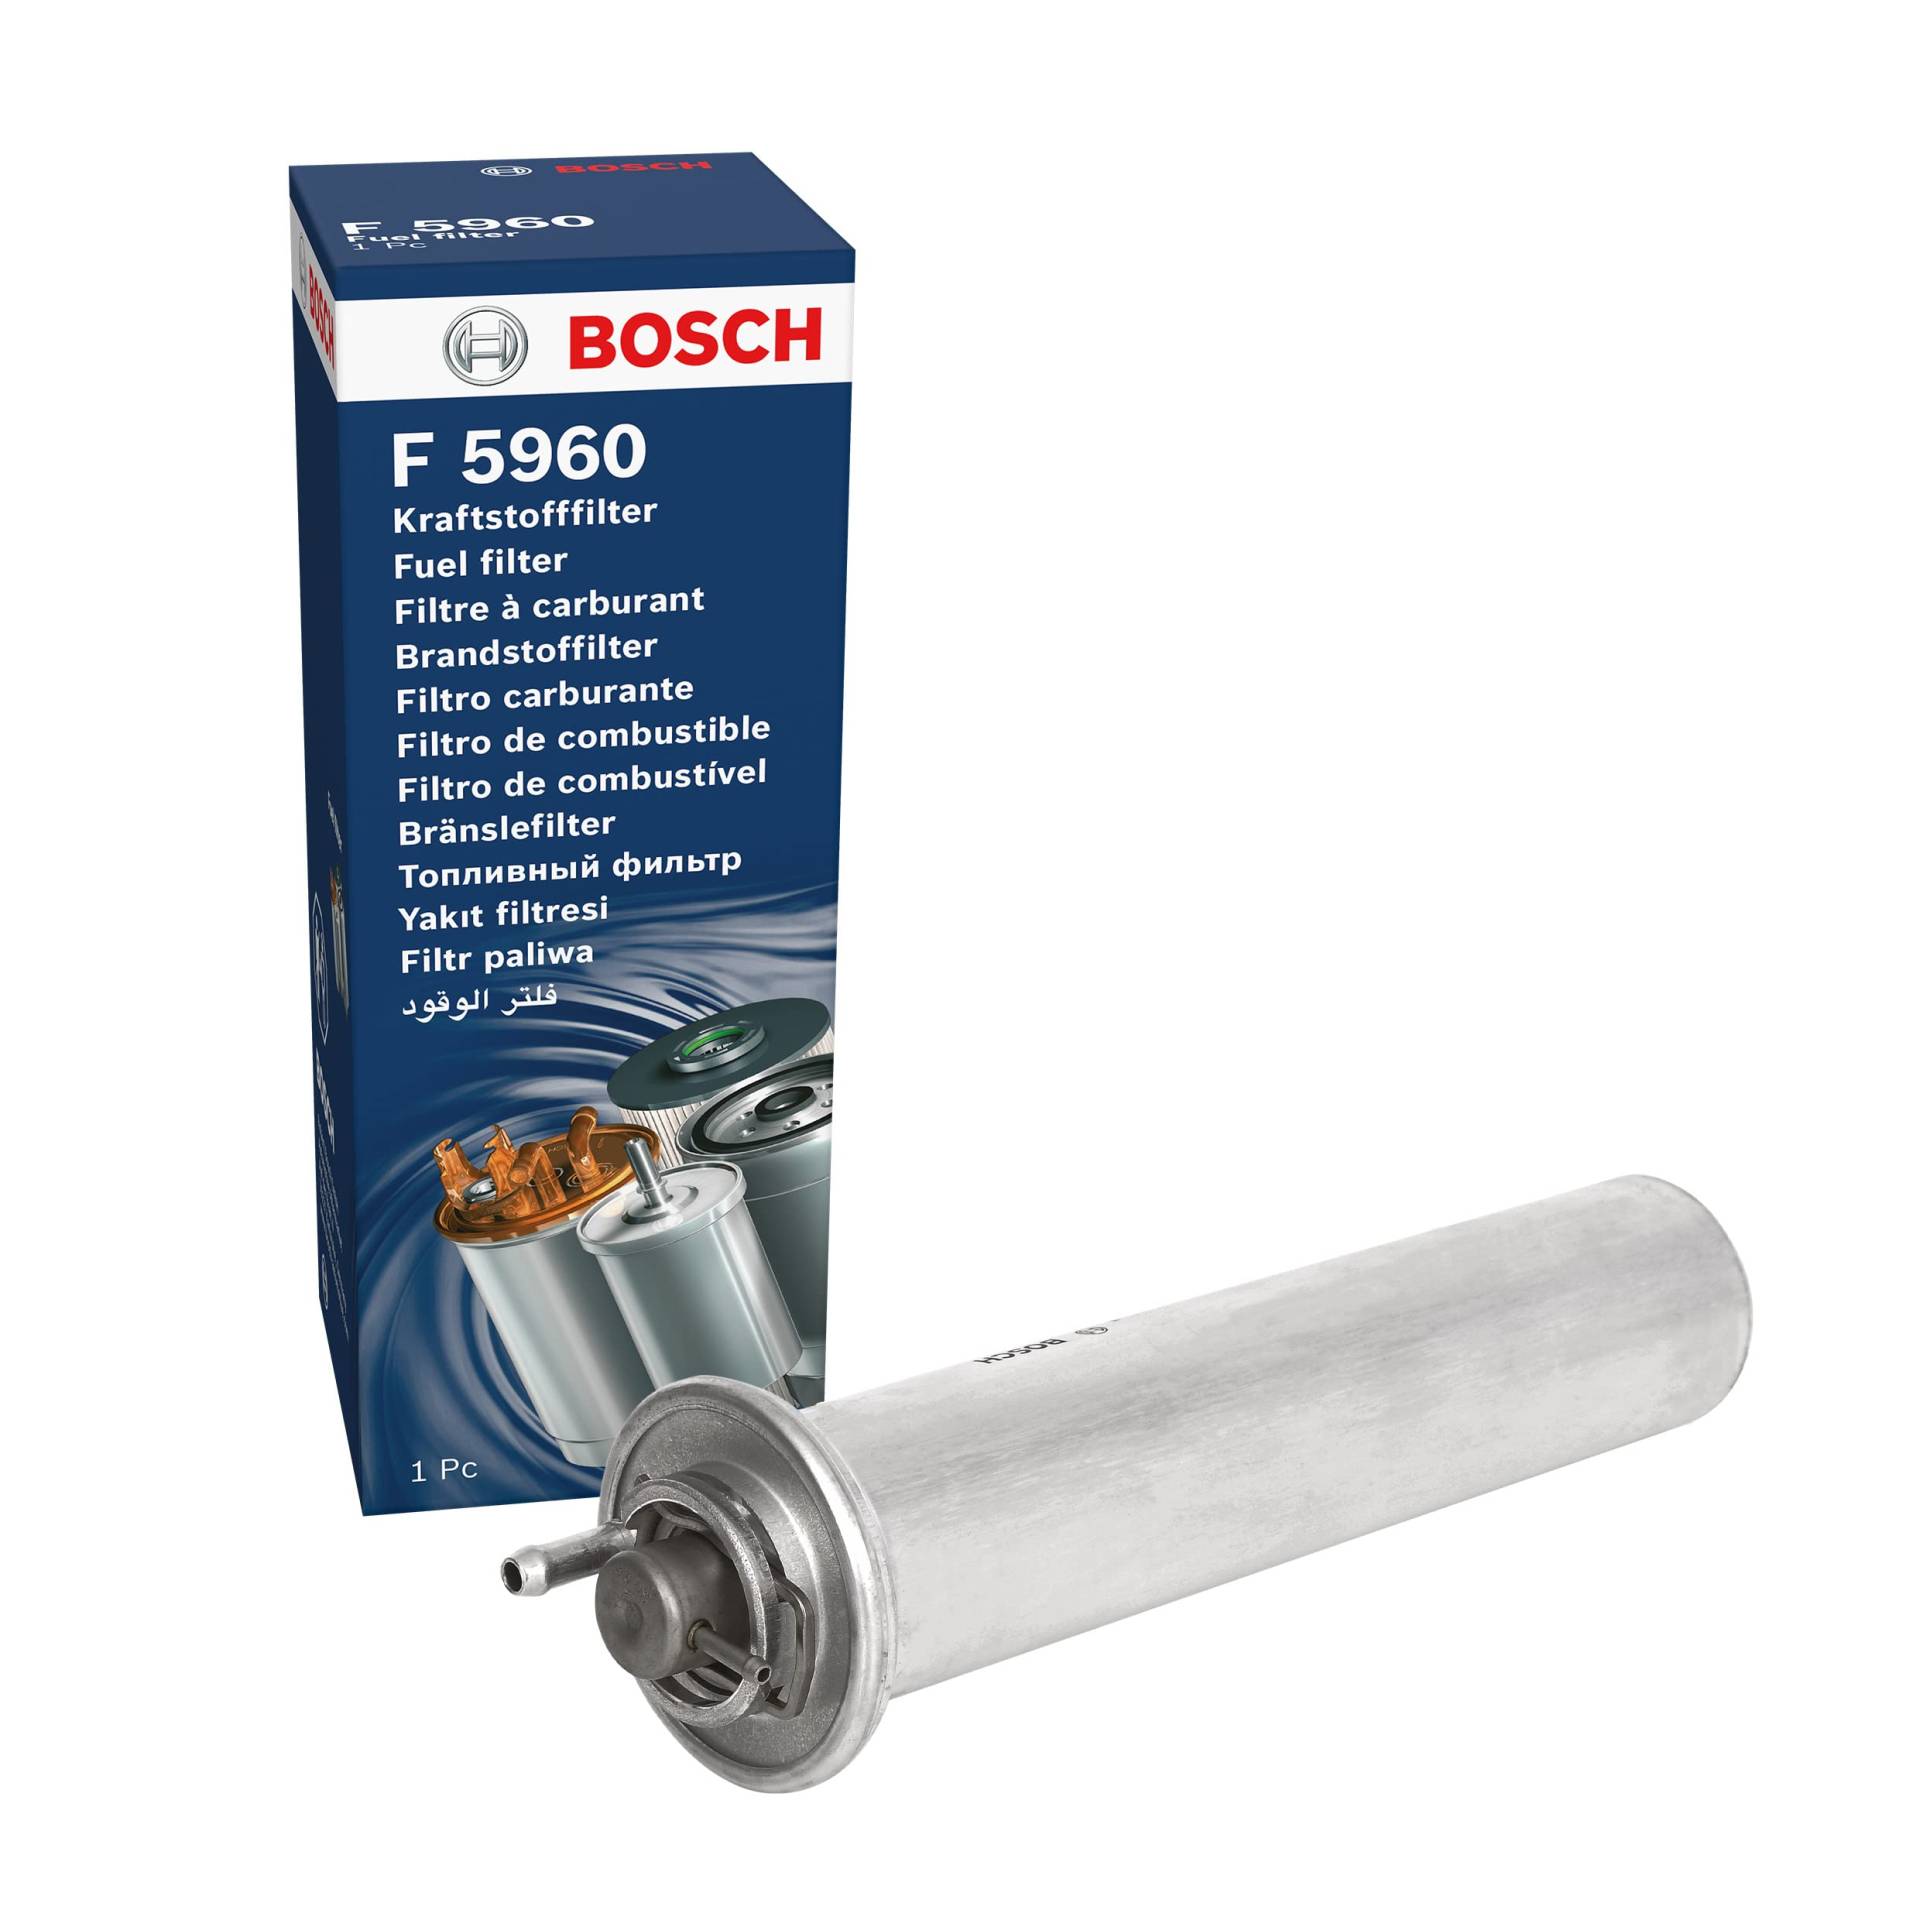 Bosch F5960 - Benzinfilter Auto von Bosch Automotive